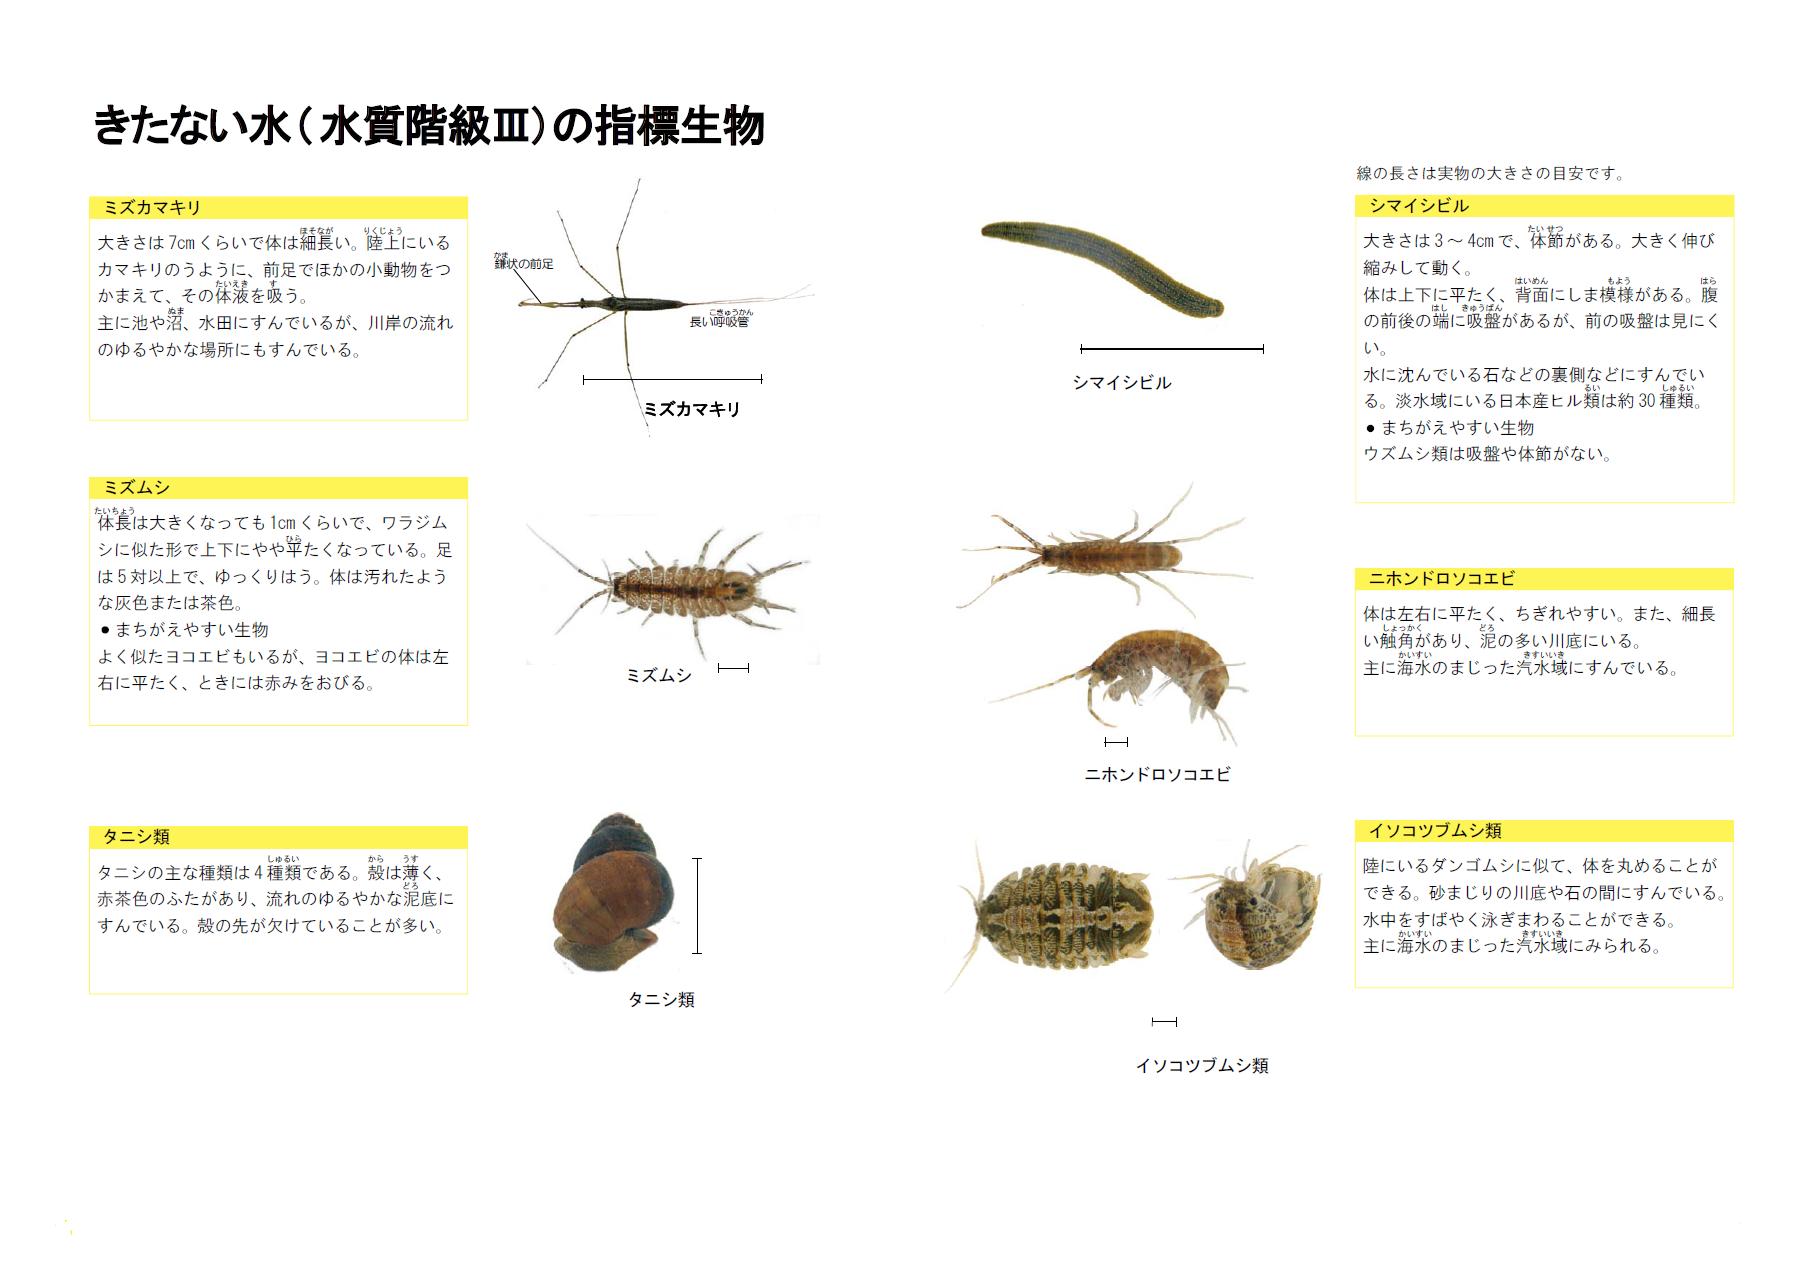 全国水生生物調査 川の生きものを調べよう 青森県庁ウェブサイト Aomori Prefectural Government